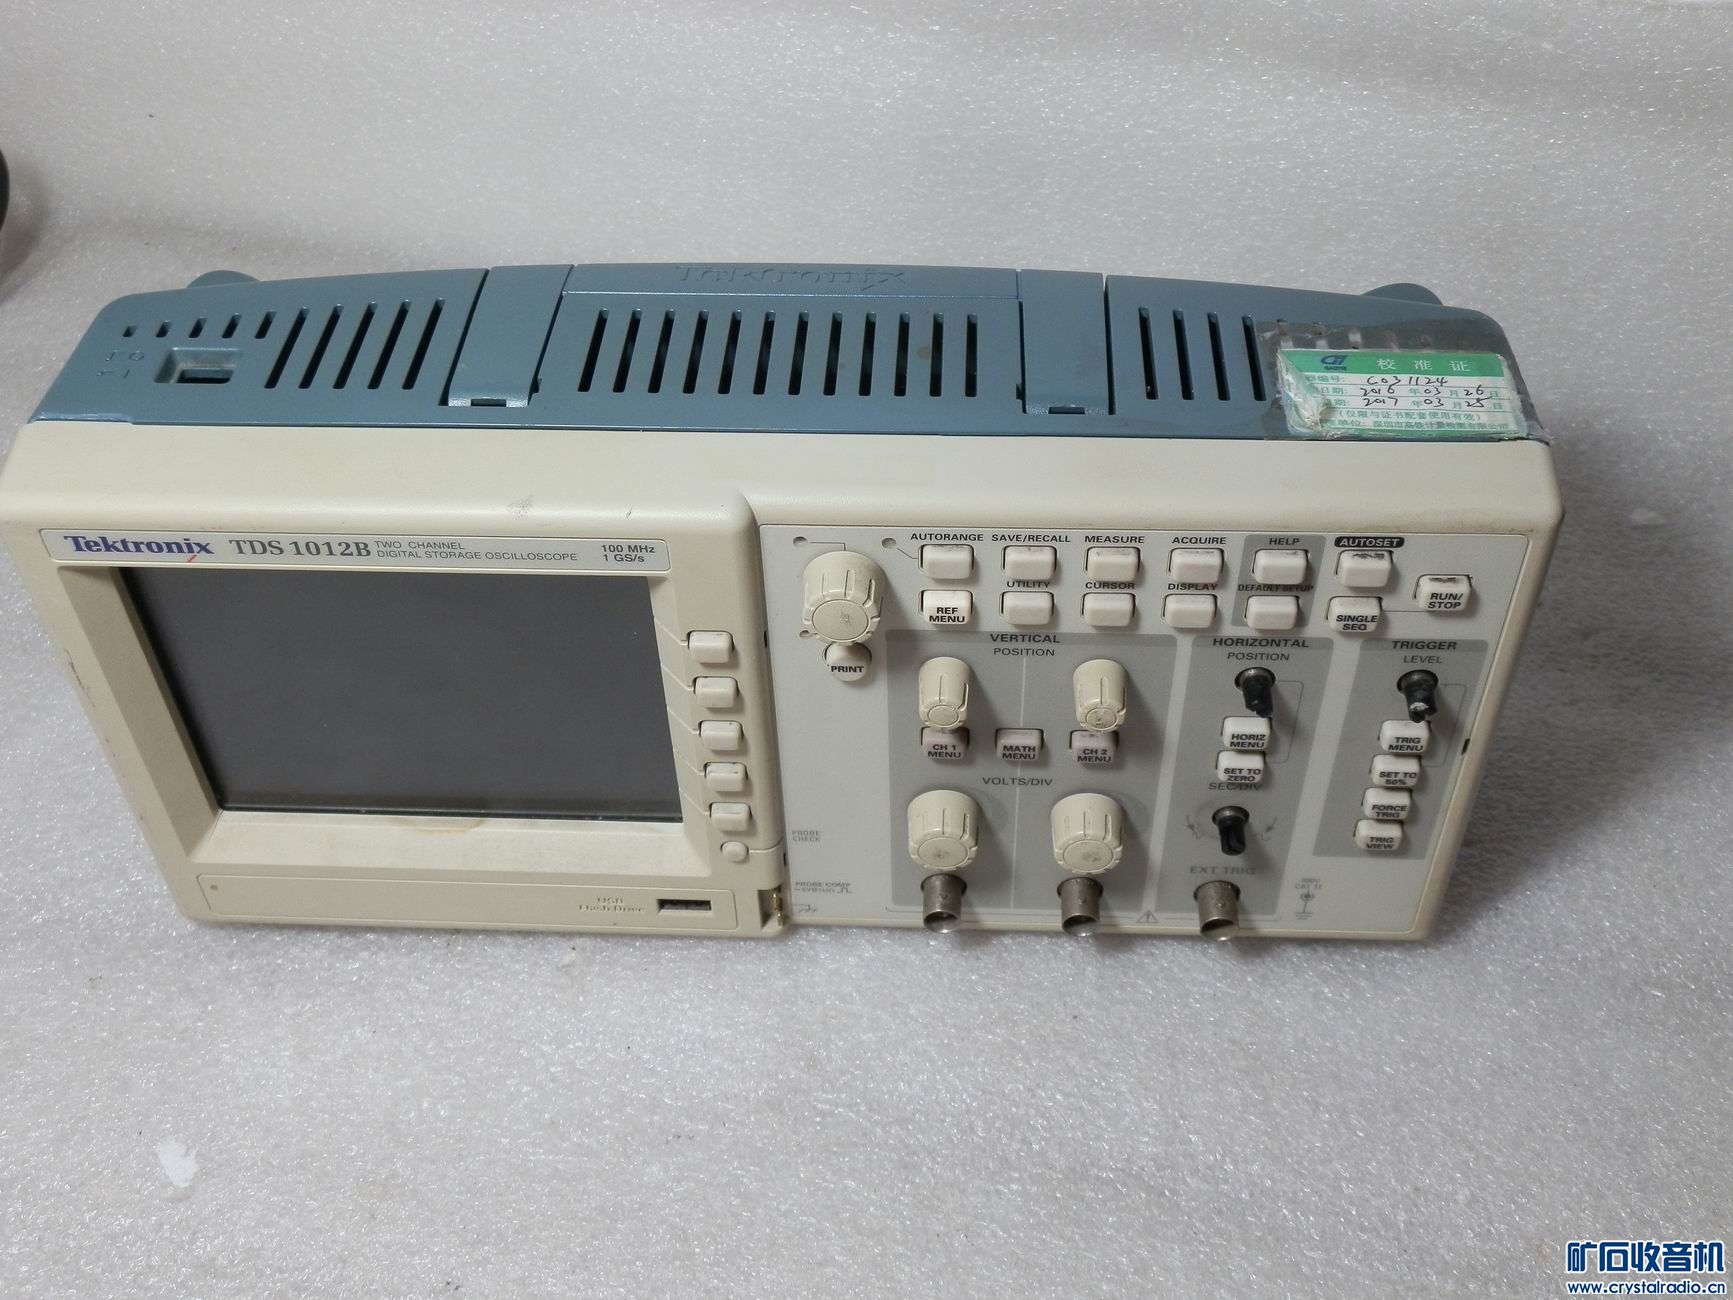 Tekker TDS1012 oscilloscope